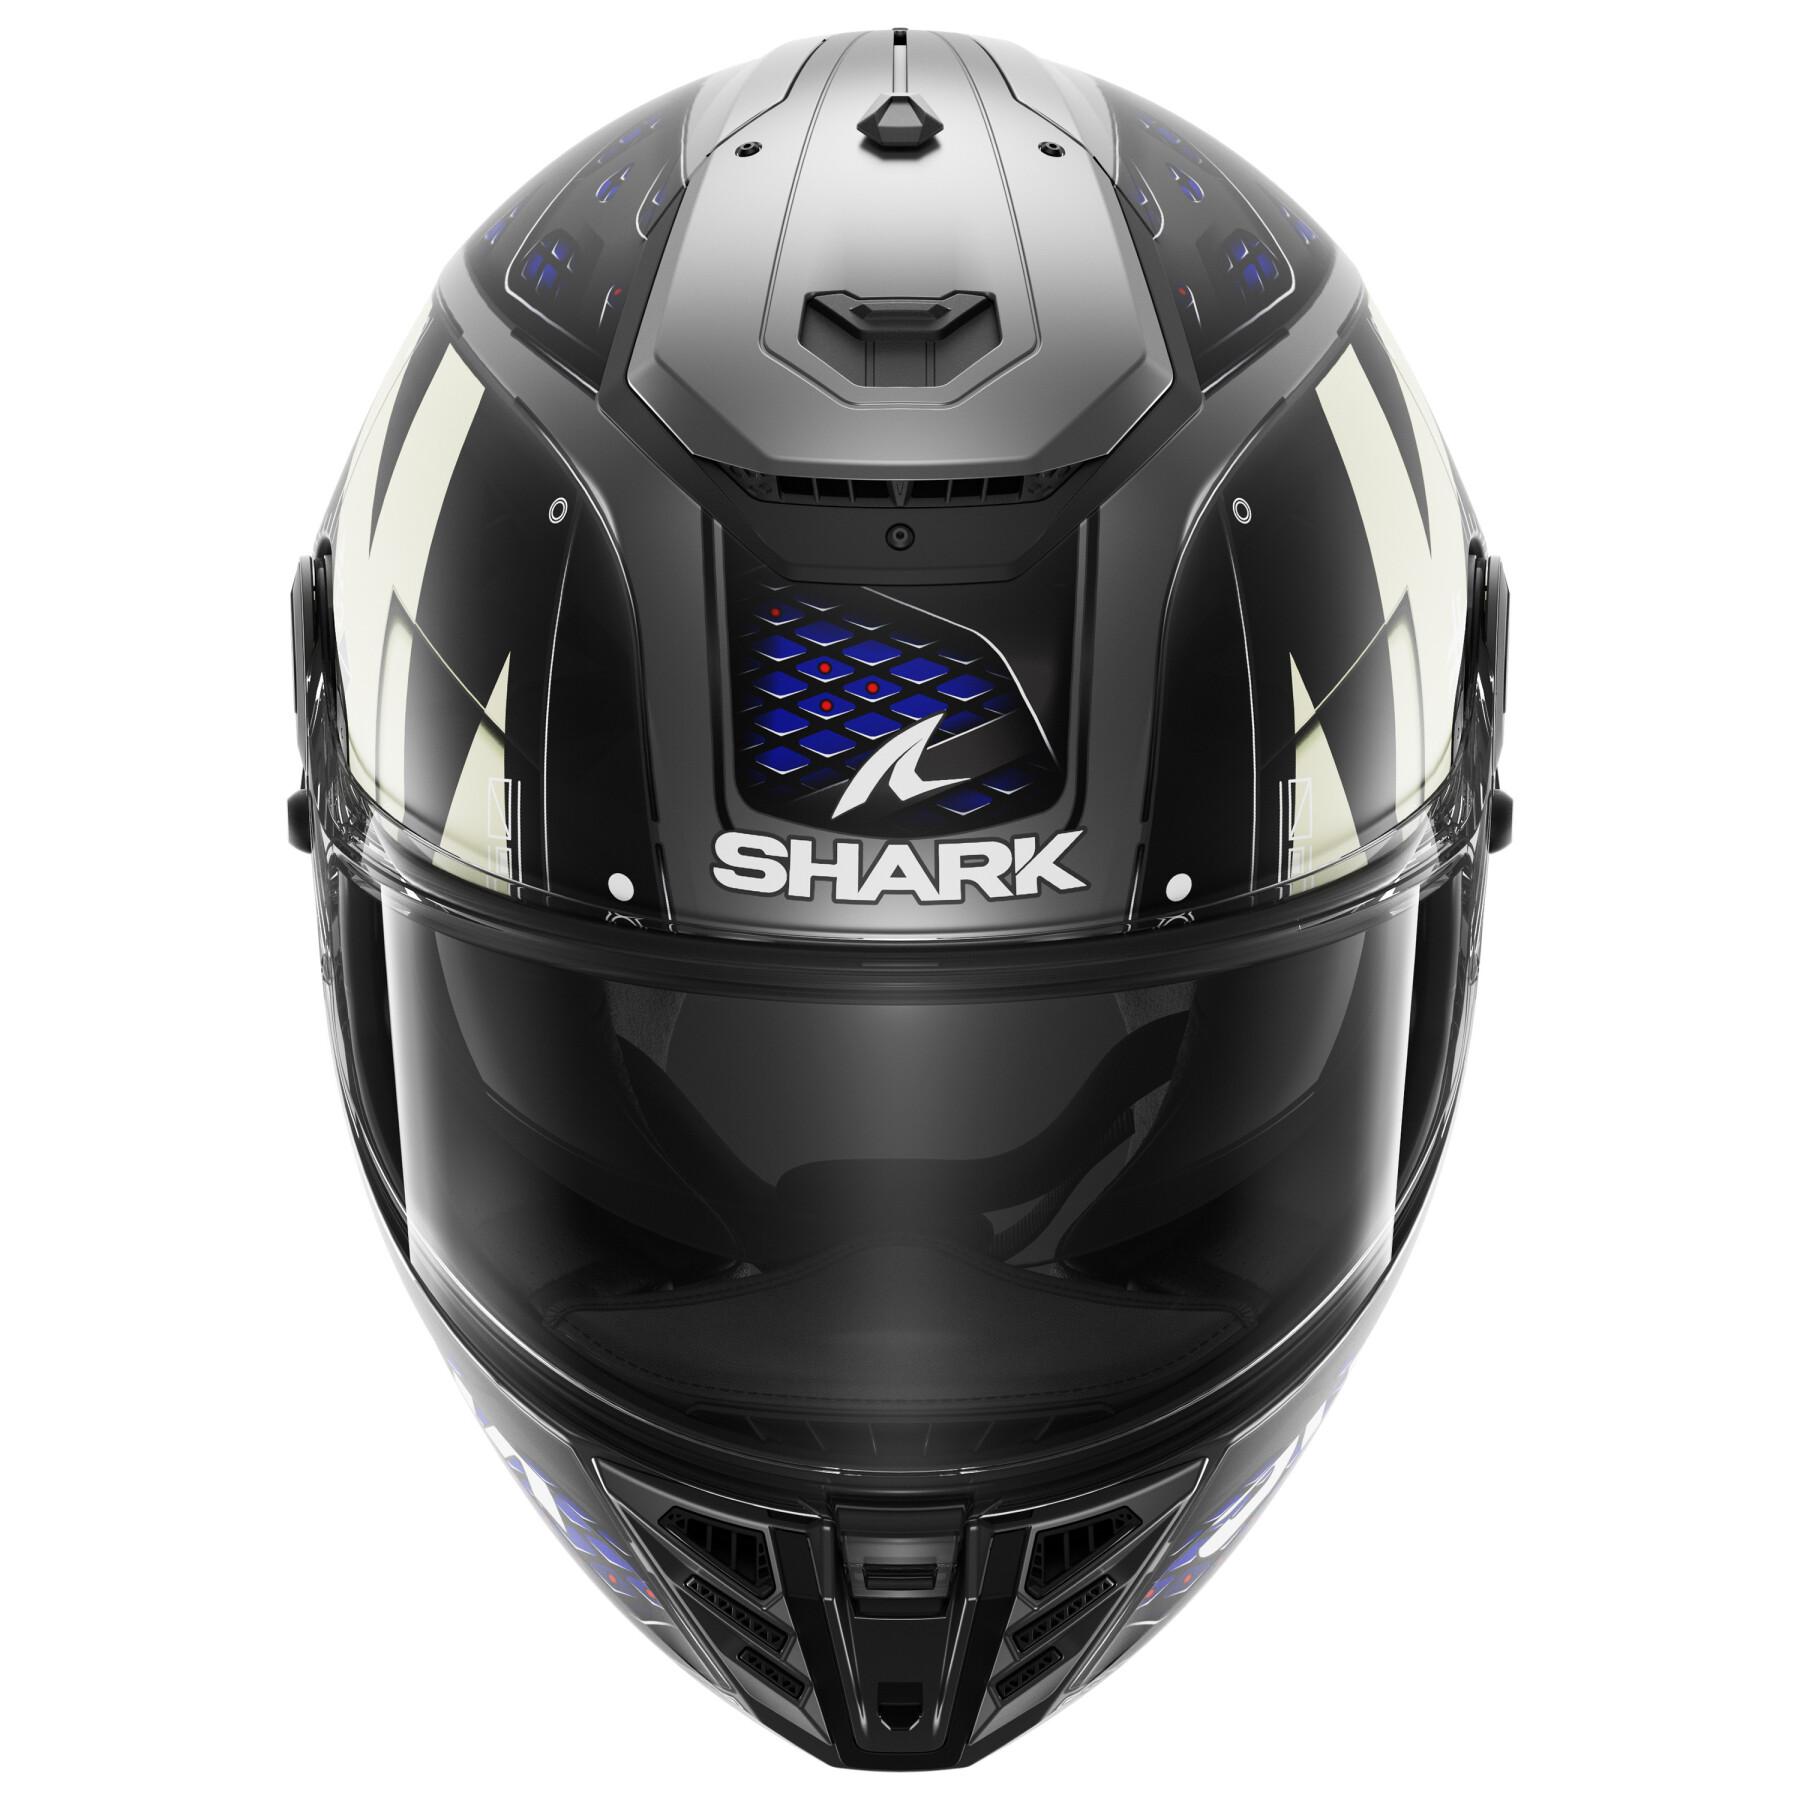 Motorrad-Integralhelm Shark Spartan Rs Stingrey